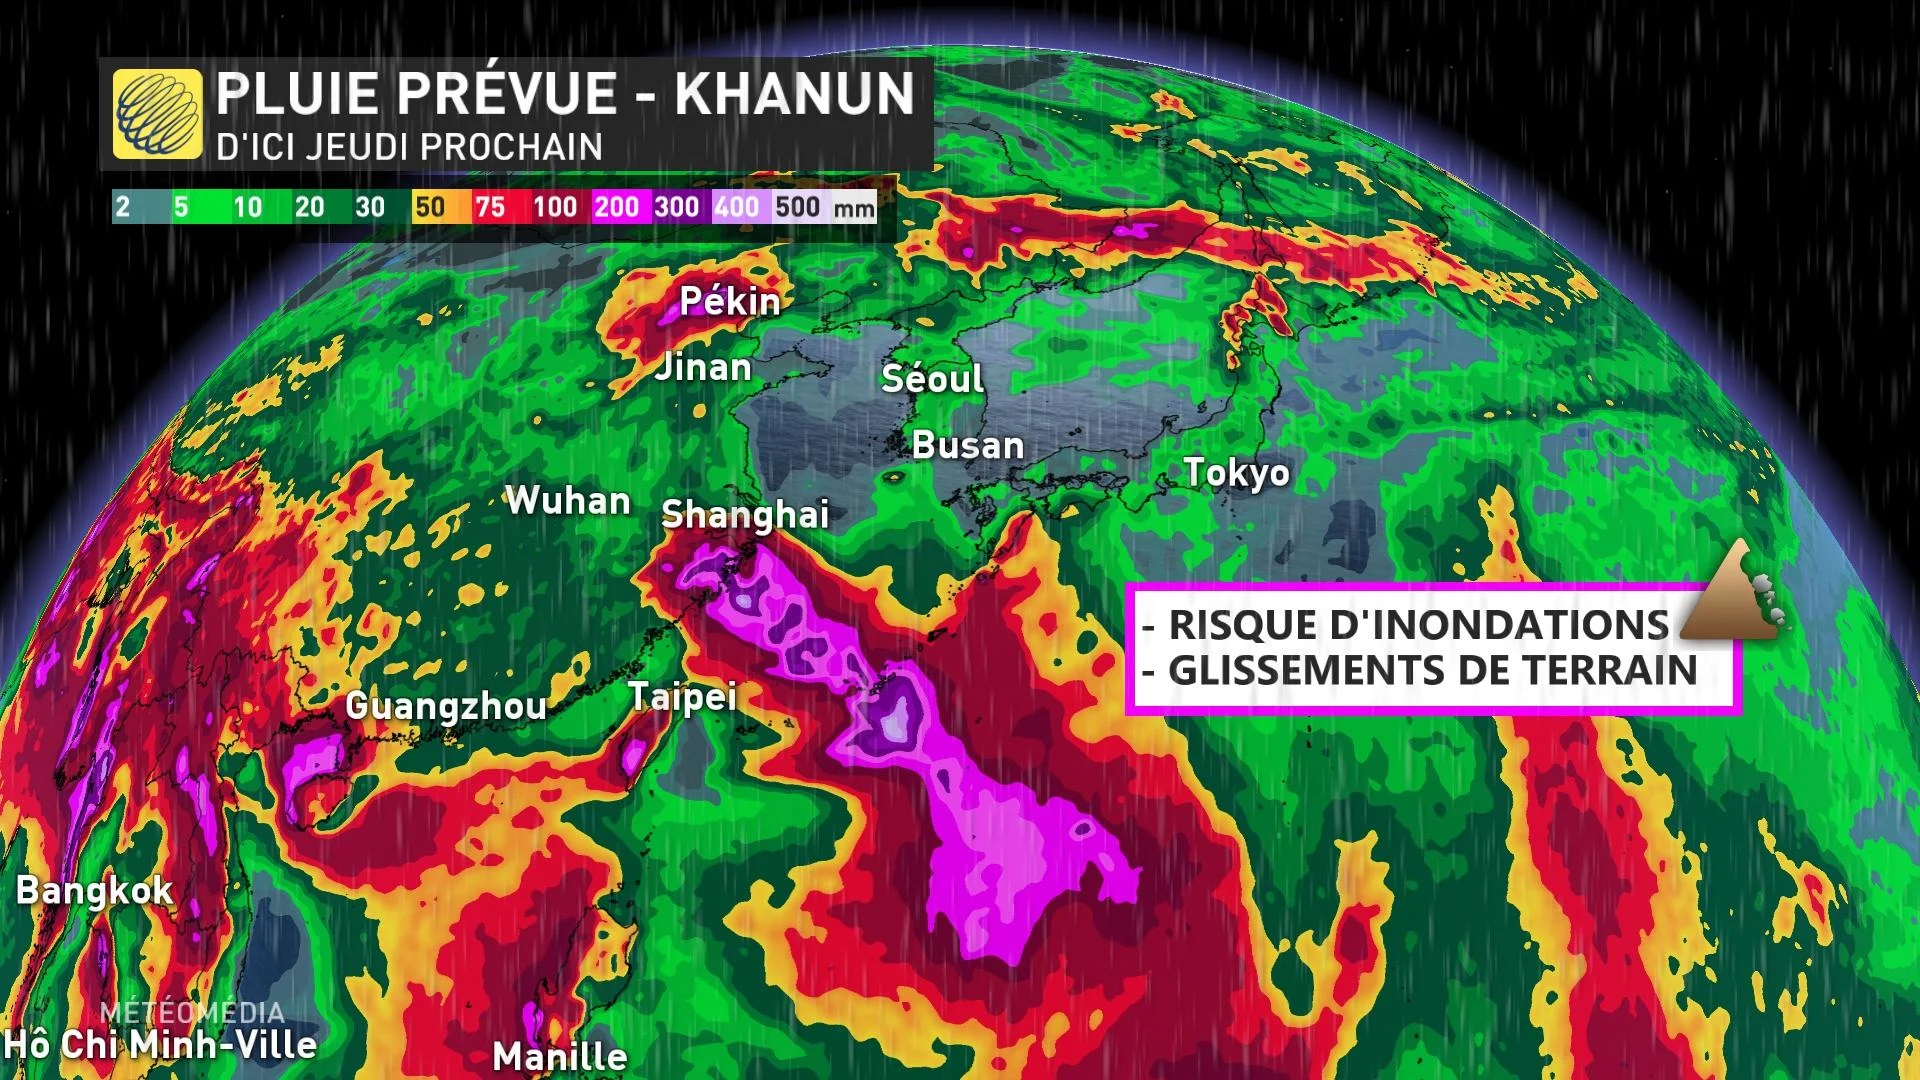 Pluie prévue pour le typhon Khanun